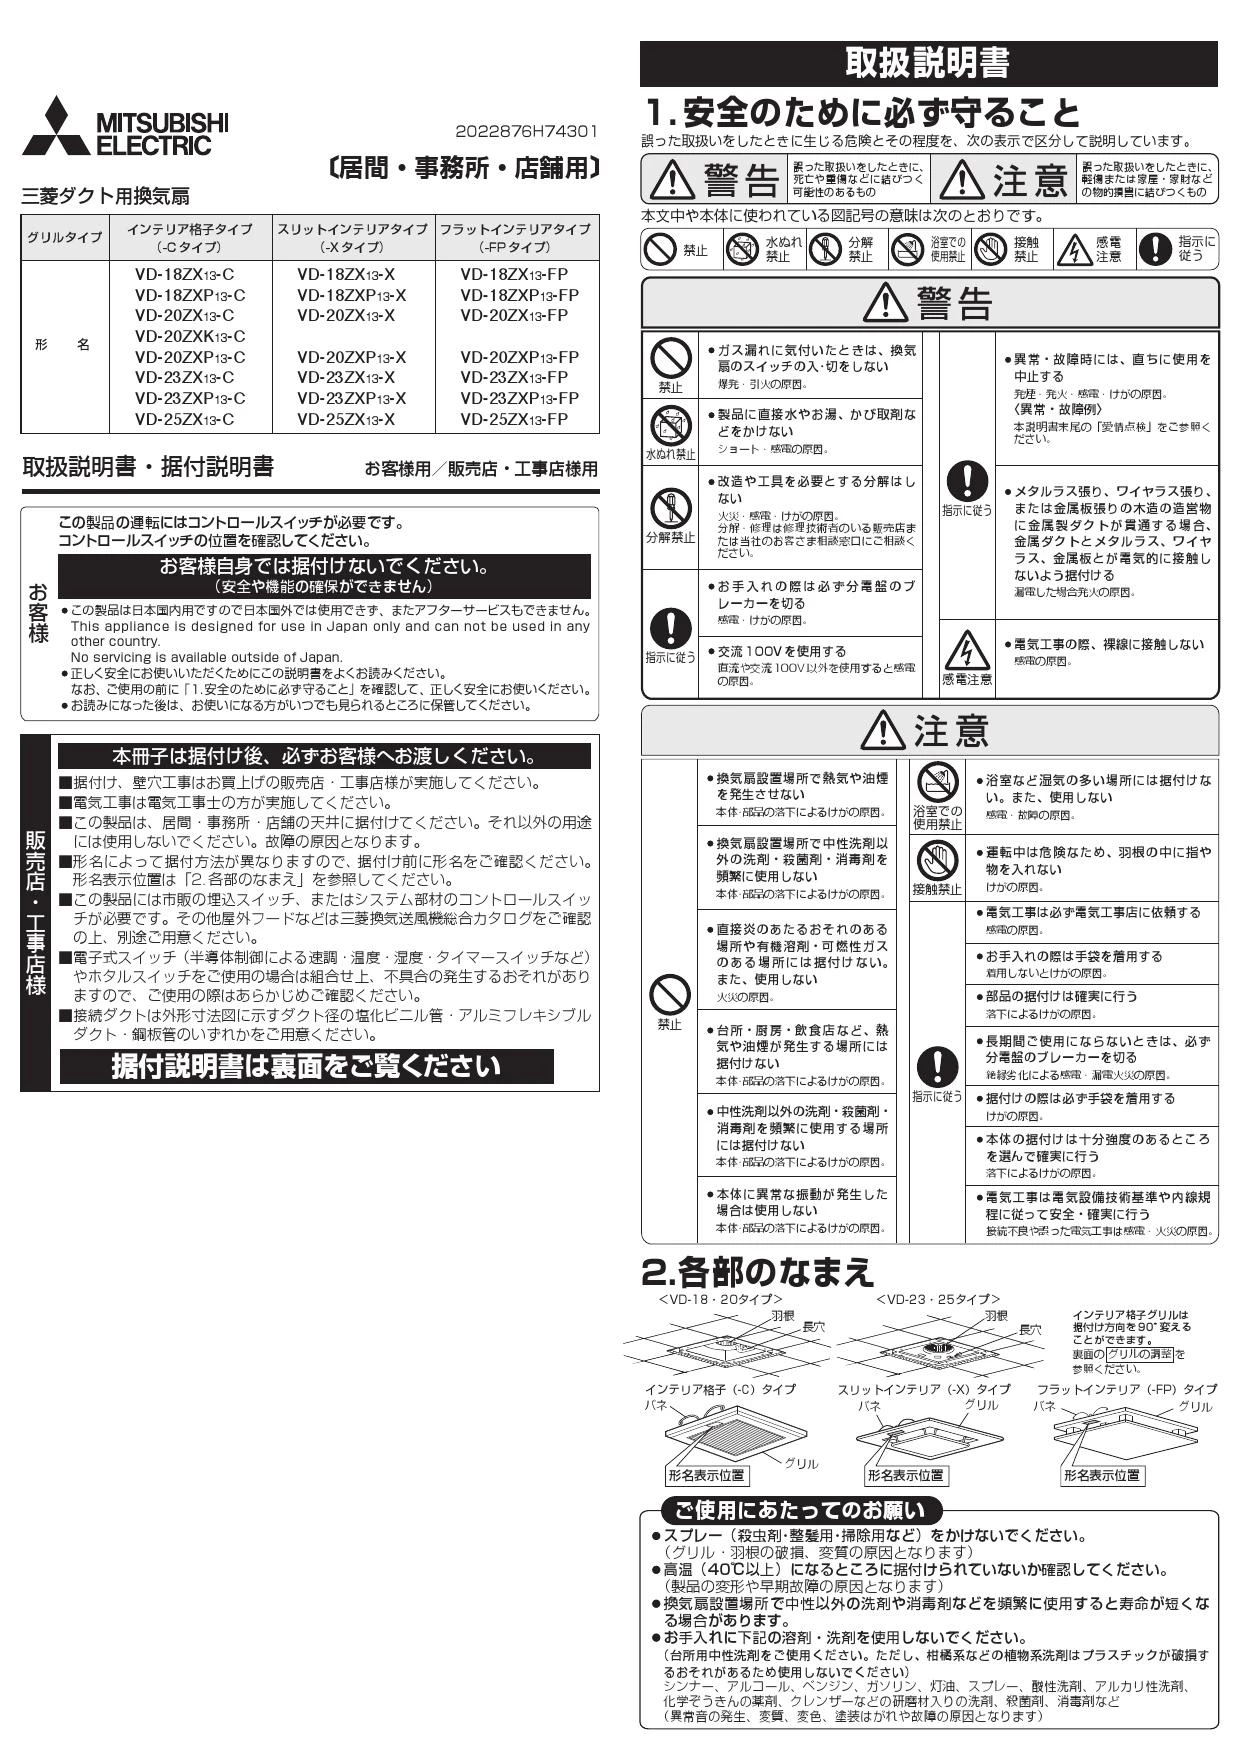 三菱電機 VD-18ZVE5-FP 三菱 居間 店舗用 換気扇-anpe.bj